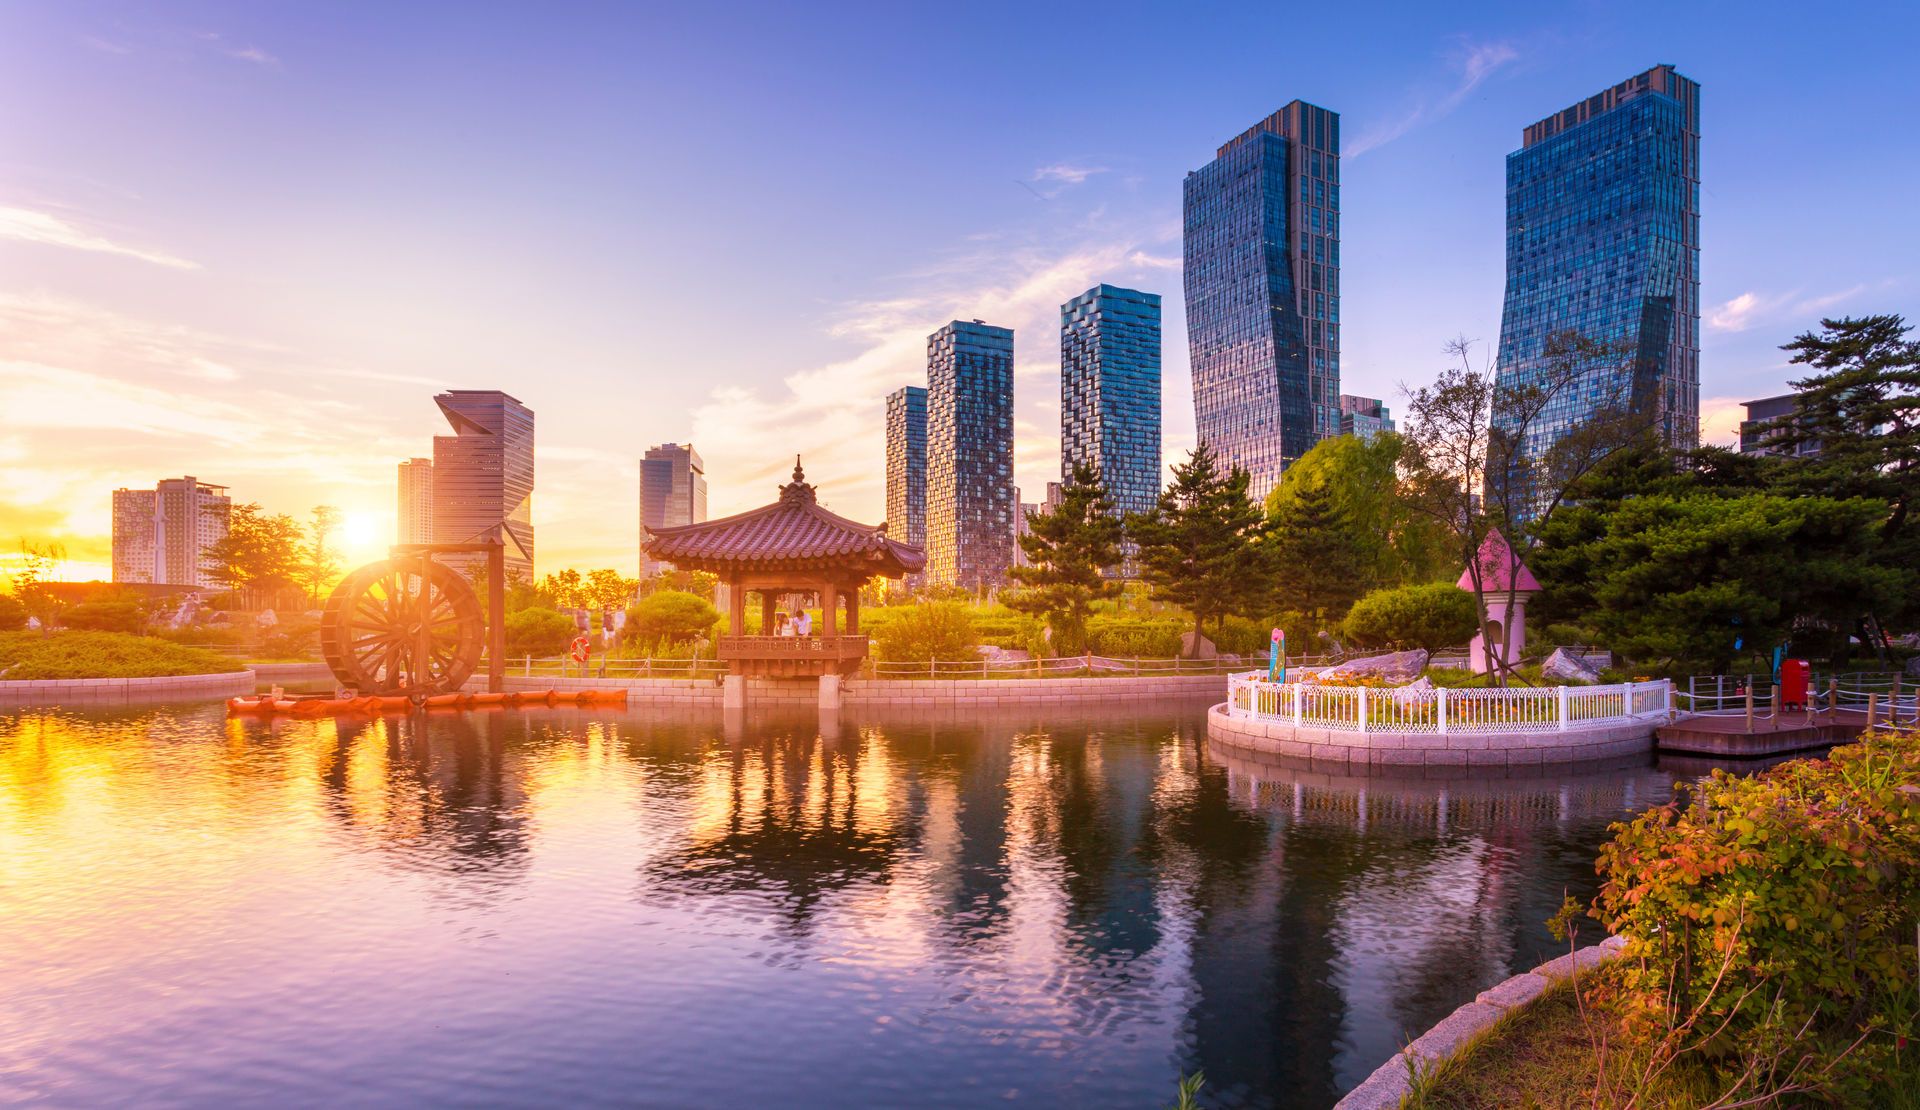 Combiné 3 capitales asiatiques incroyables 3* : Pékin, Séoul et Tokyo pas cher photo 1